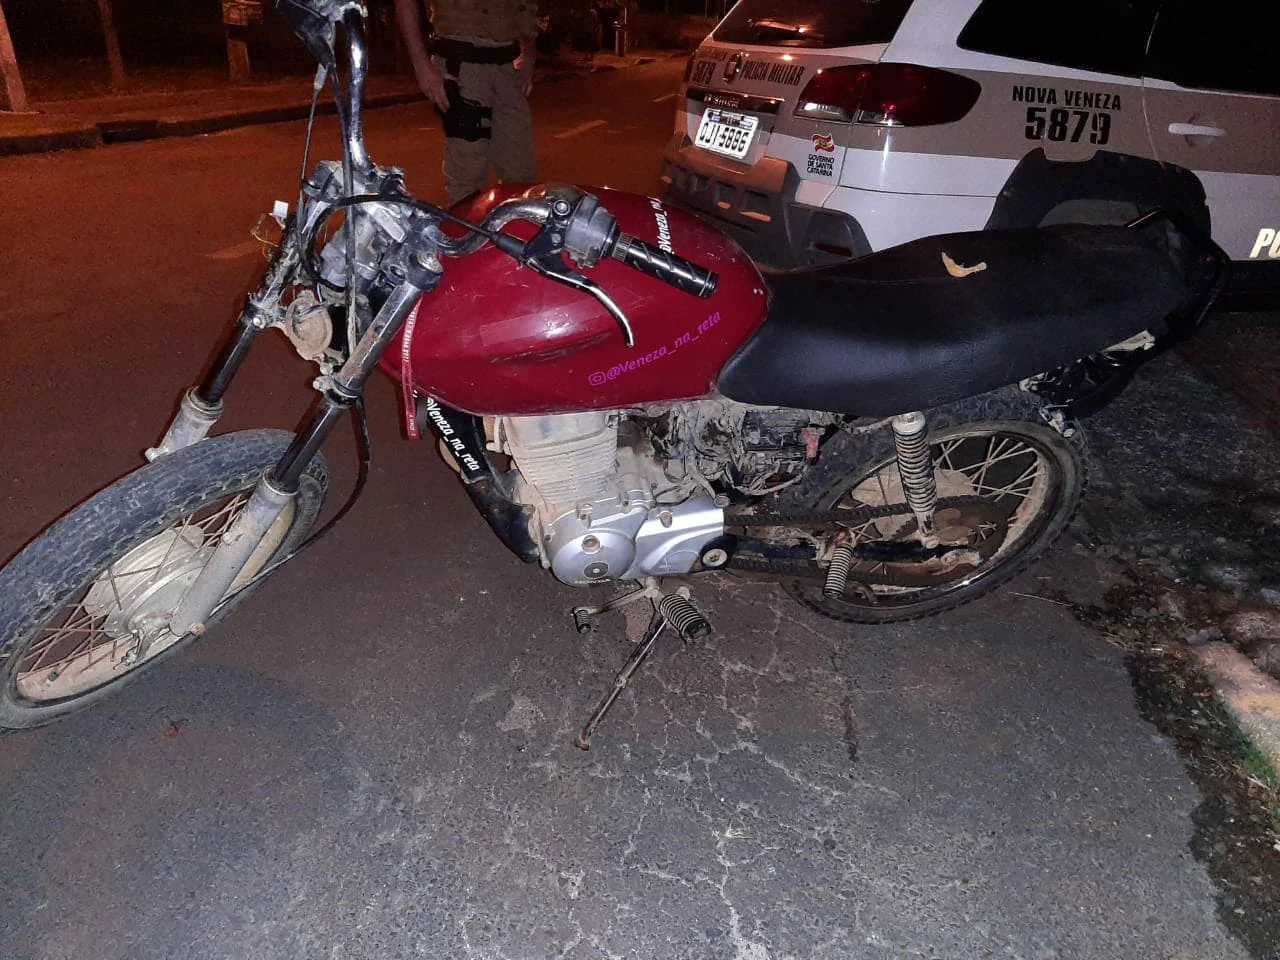 Polícia Militar recupera em Nova Veneza moto possivelmente fruto de furto ou roubo